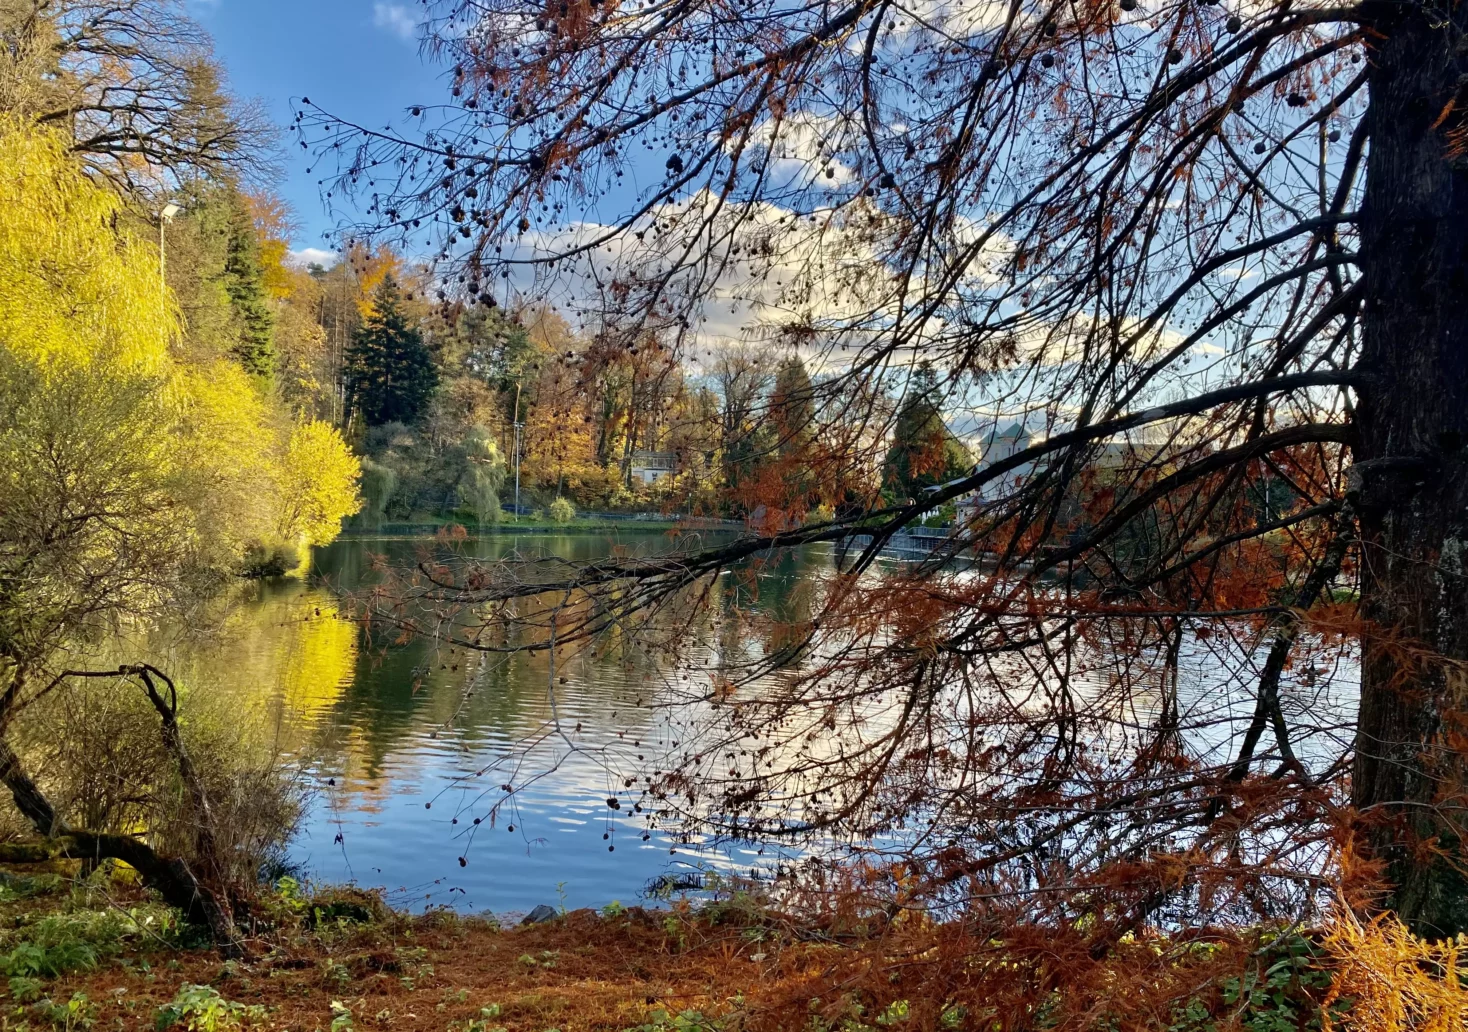 Bild auf 5min.at zeigt die Kulisse rund um einen Teich im Herbst.